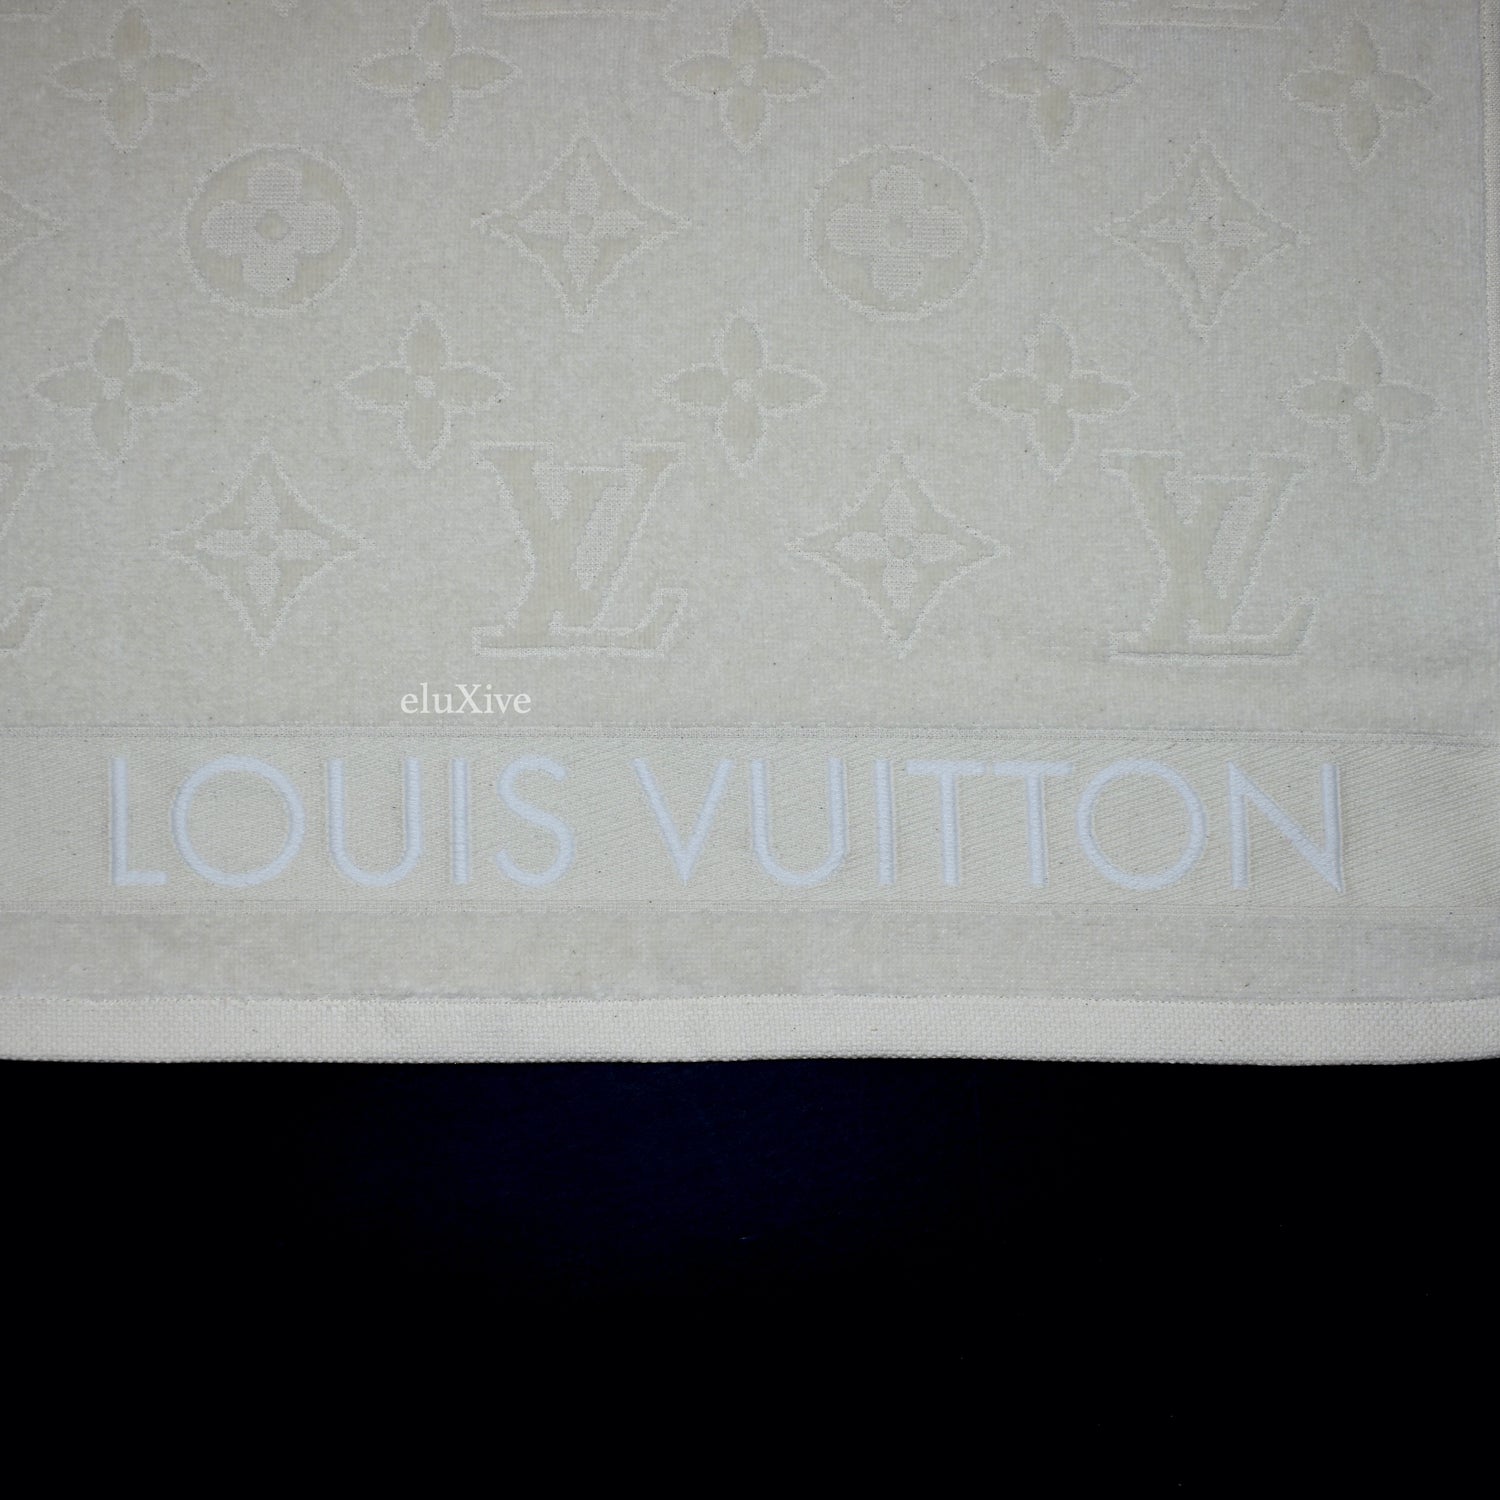 Louis Vuitton Beach Towel Bath Towel Blue White Monogram with Box